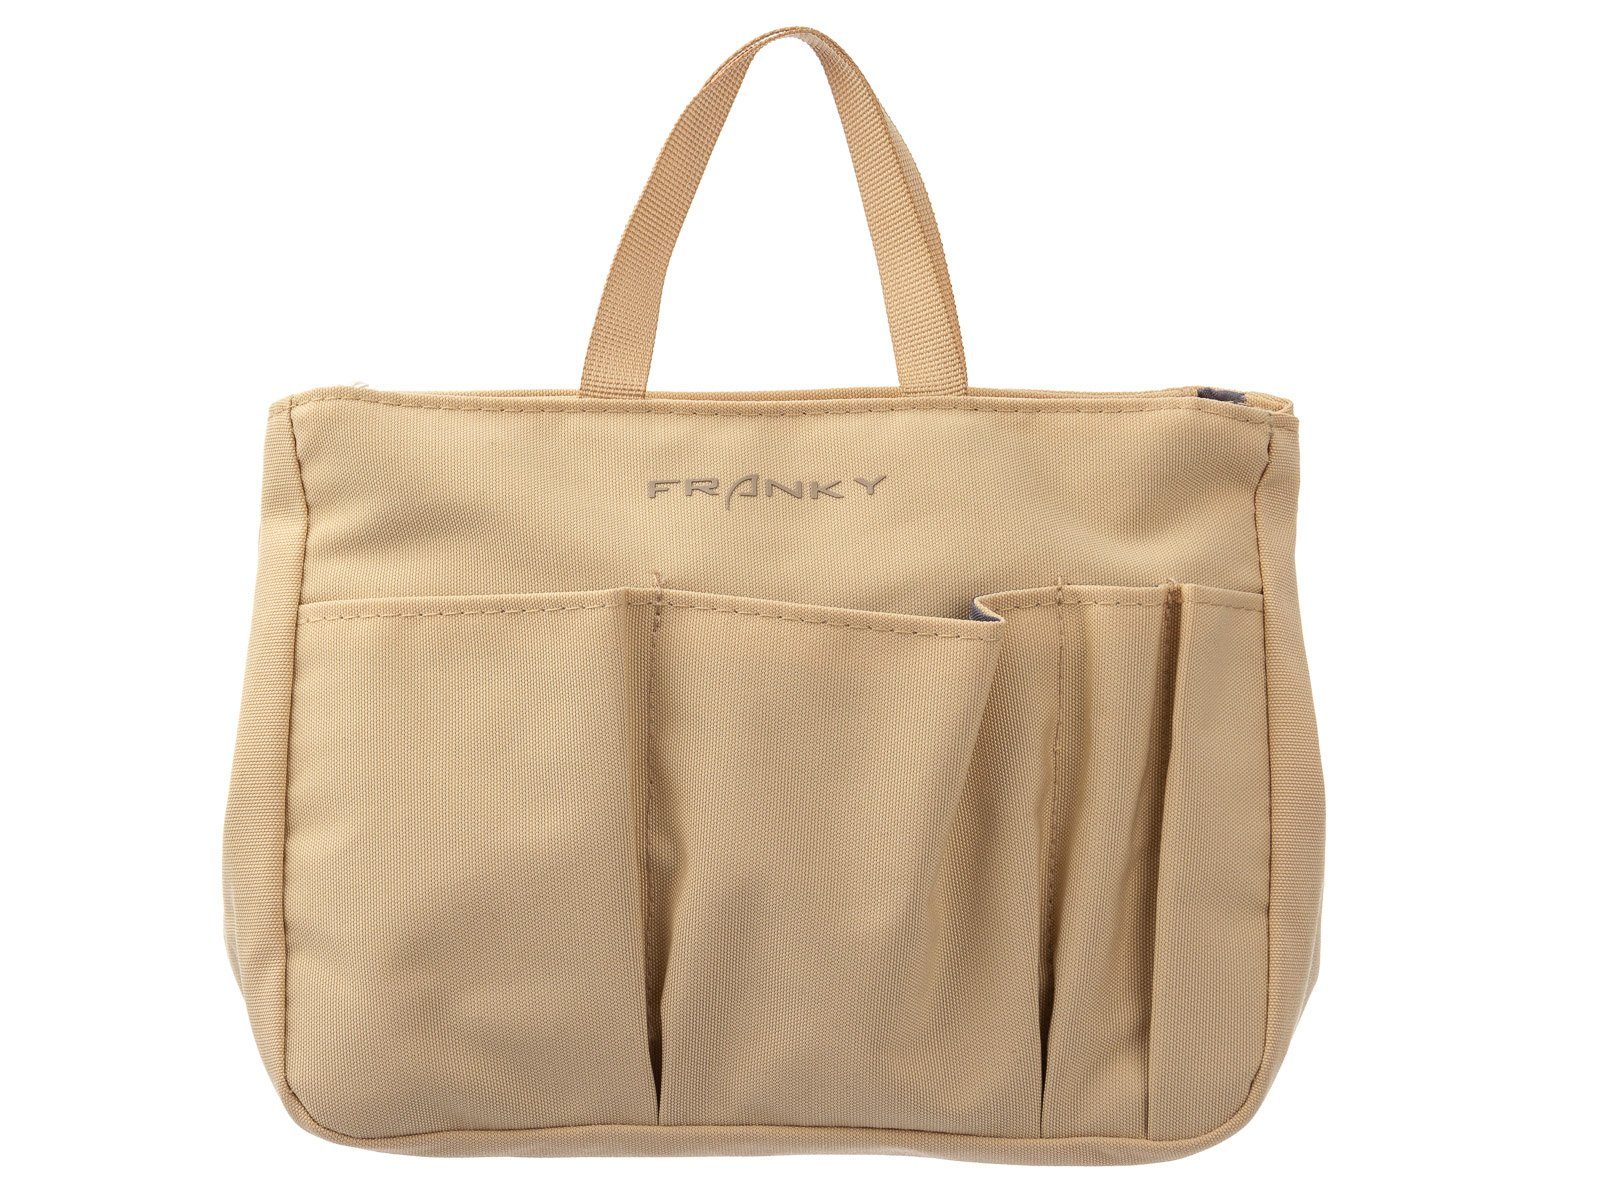 Taschen in Bag Organizer Bag Franky BO2 Packtasche, beige Kofferorganizer Franky